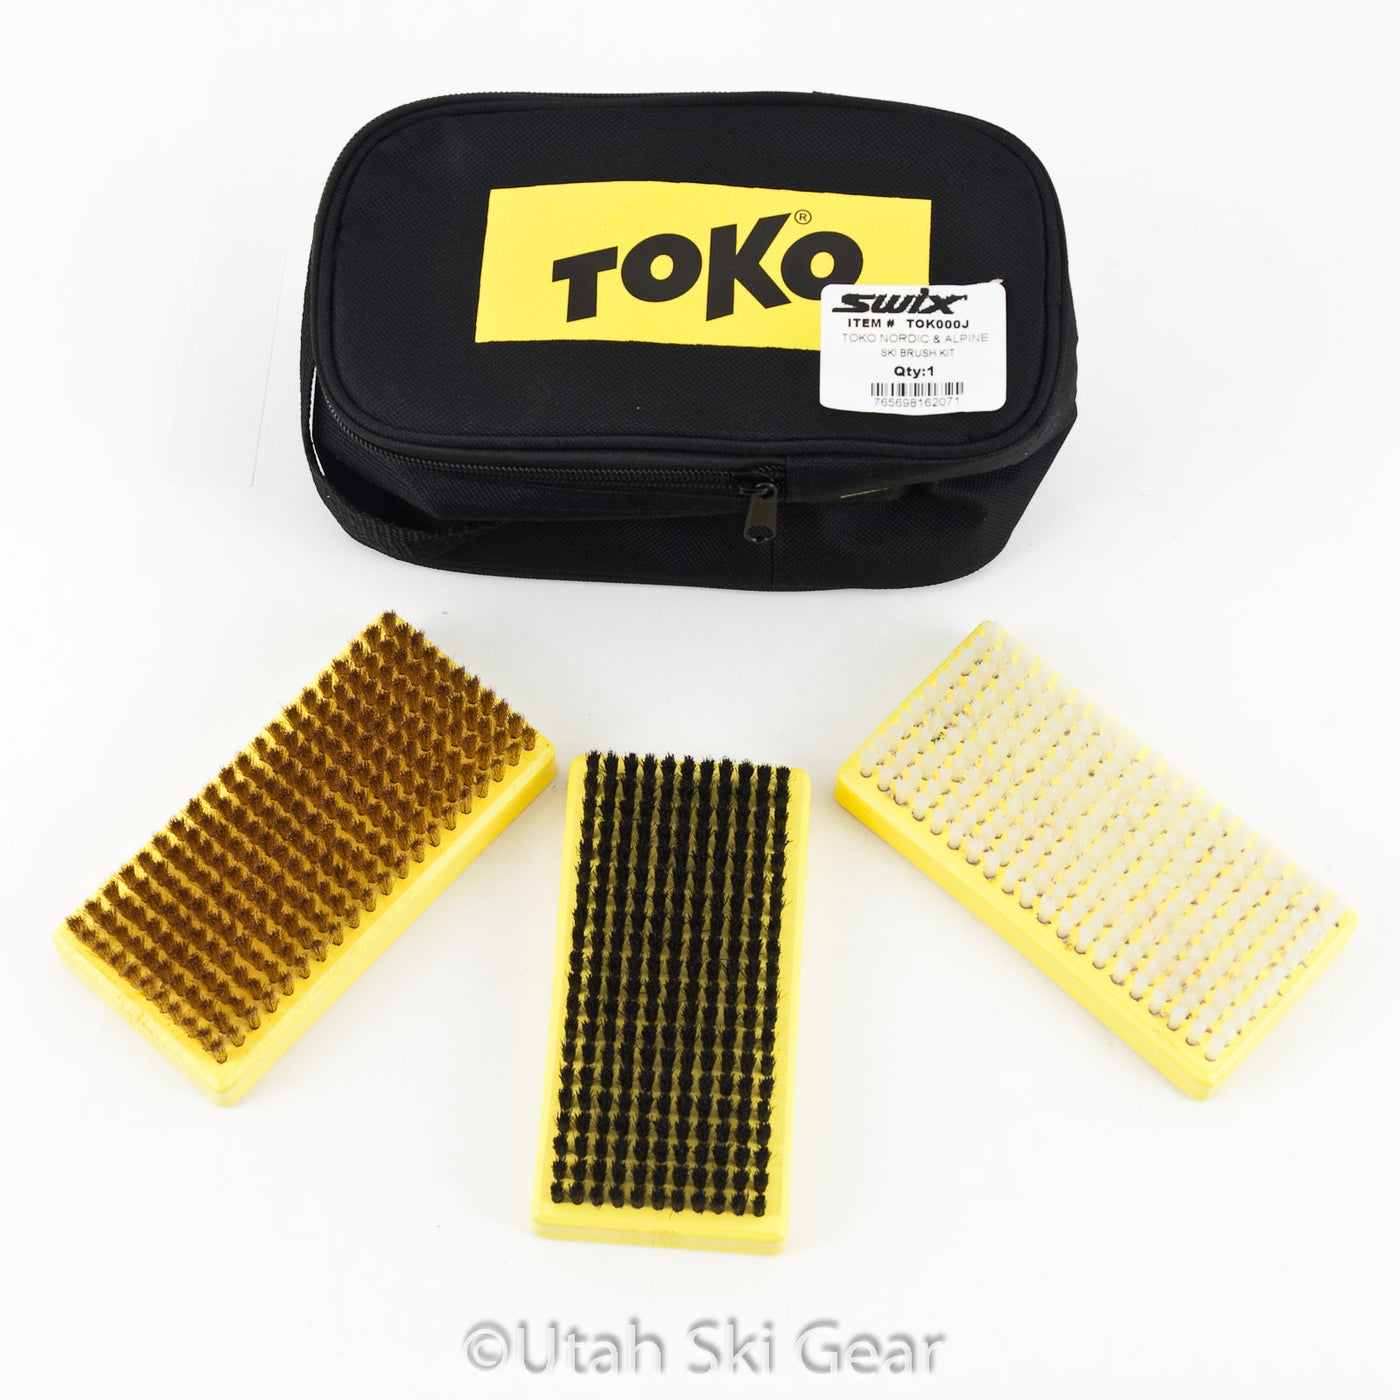 Toko Nordic & Alpine Ski Brush Kit WAXING TOOLS Toko   